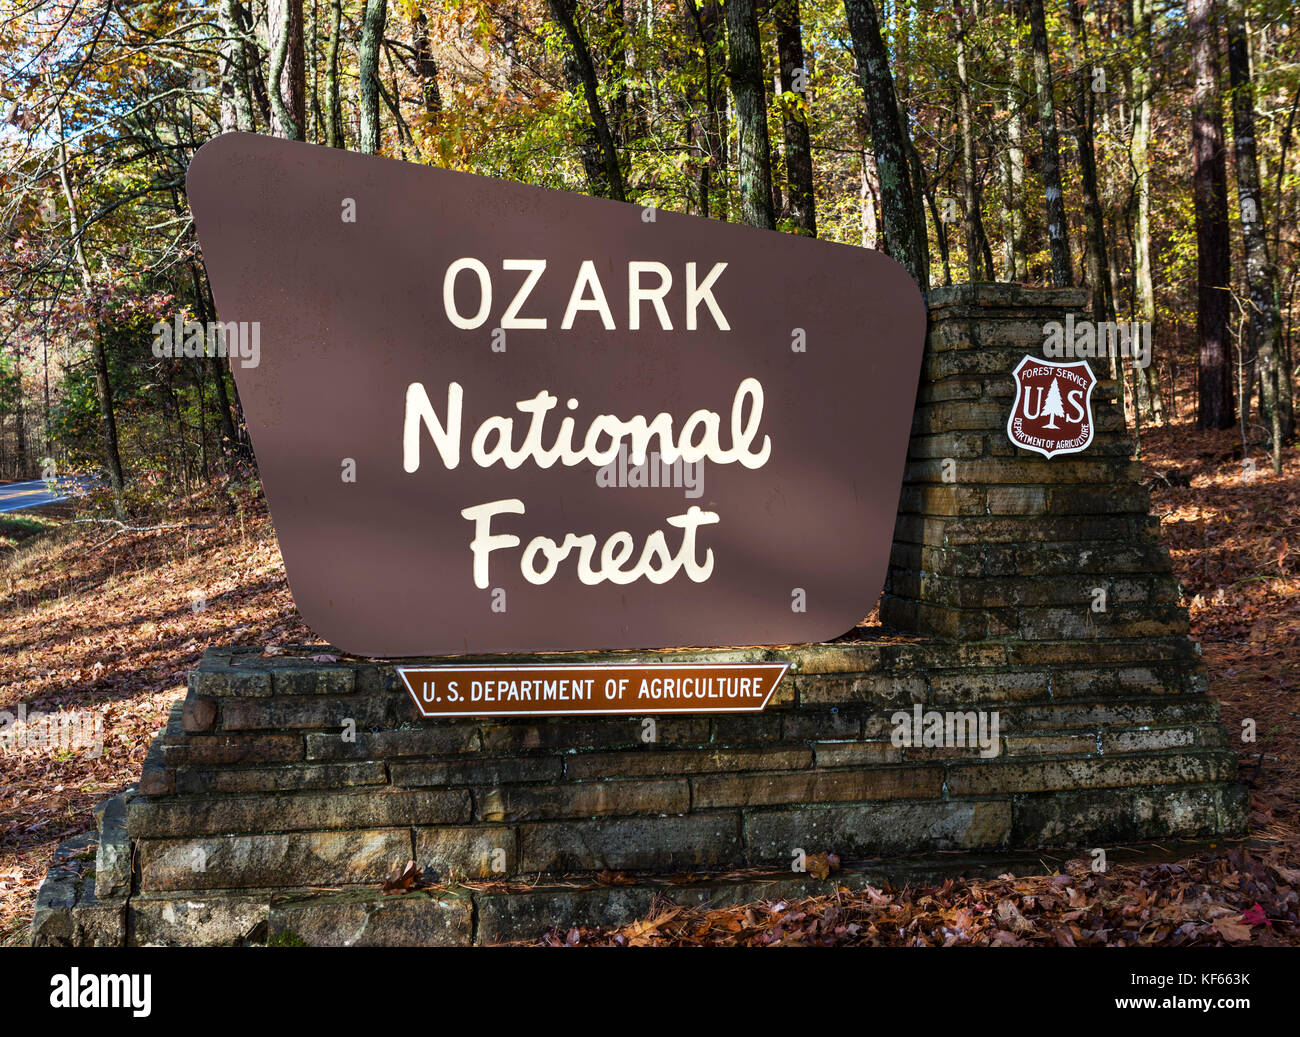 Monti Ozark, Arkansas in autunno. Ozark National Forest segno sulla strada di campagna AR-103, a nord di Clarksville, Arkansas, Stati Uniti d'America. Foto Stock